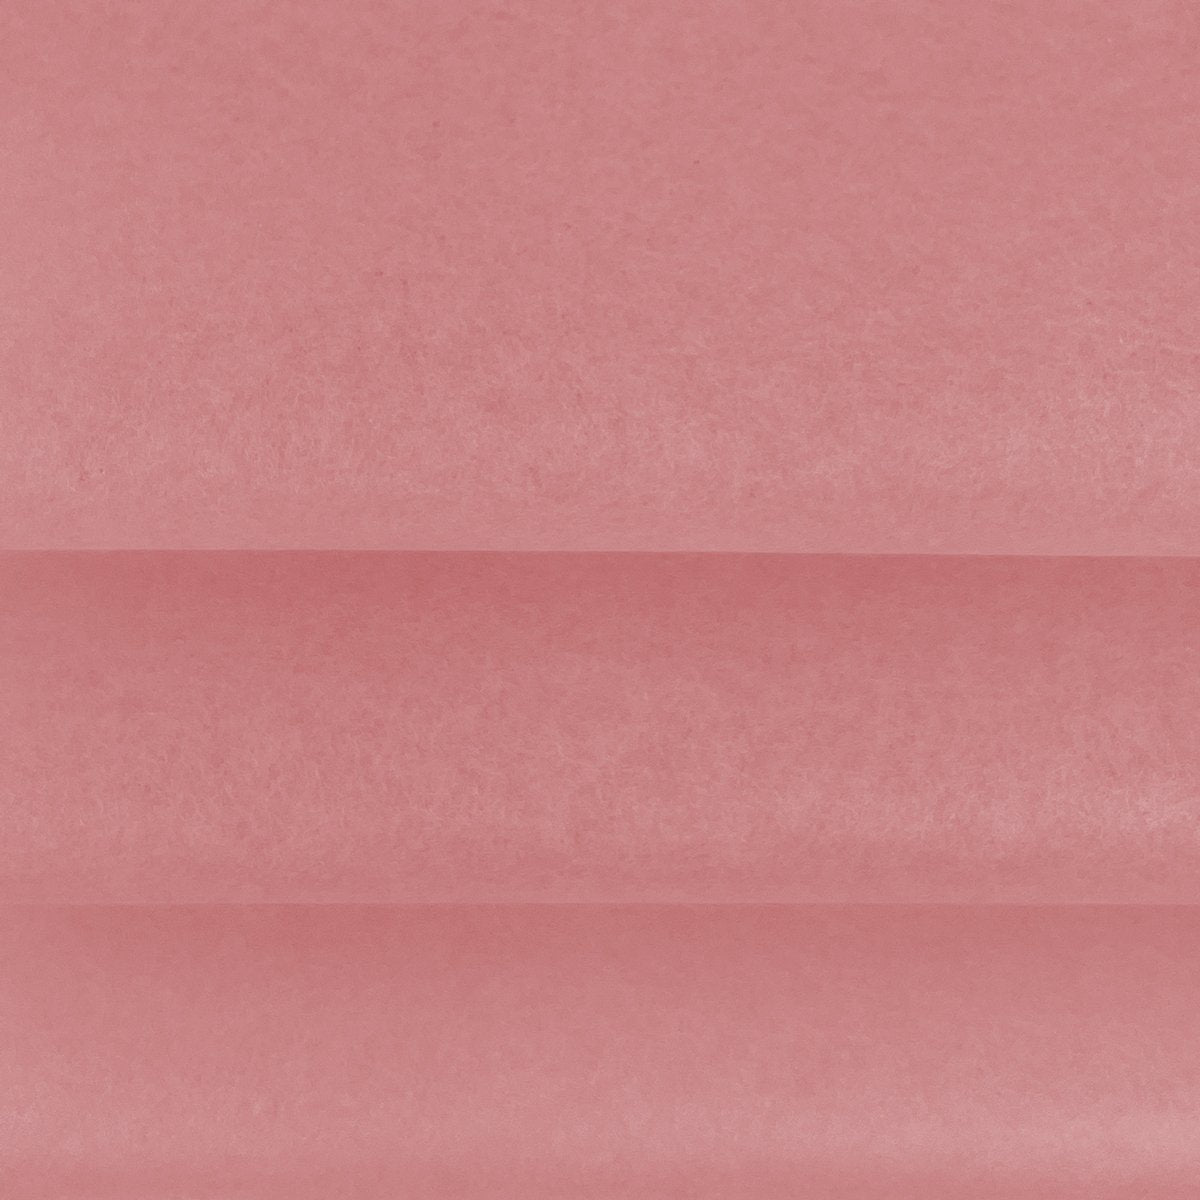 Vloeipapier -  Verschillende roze kleuren